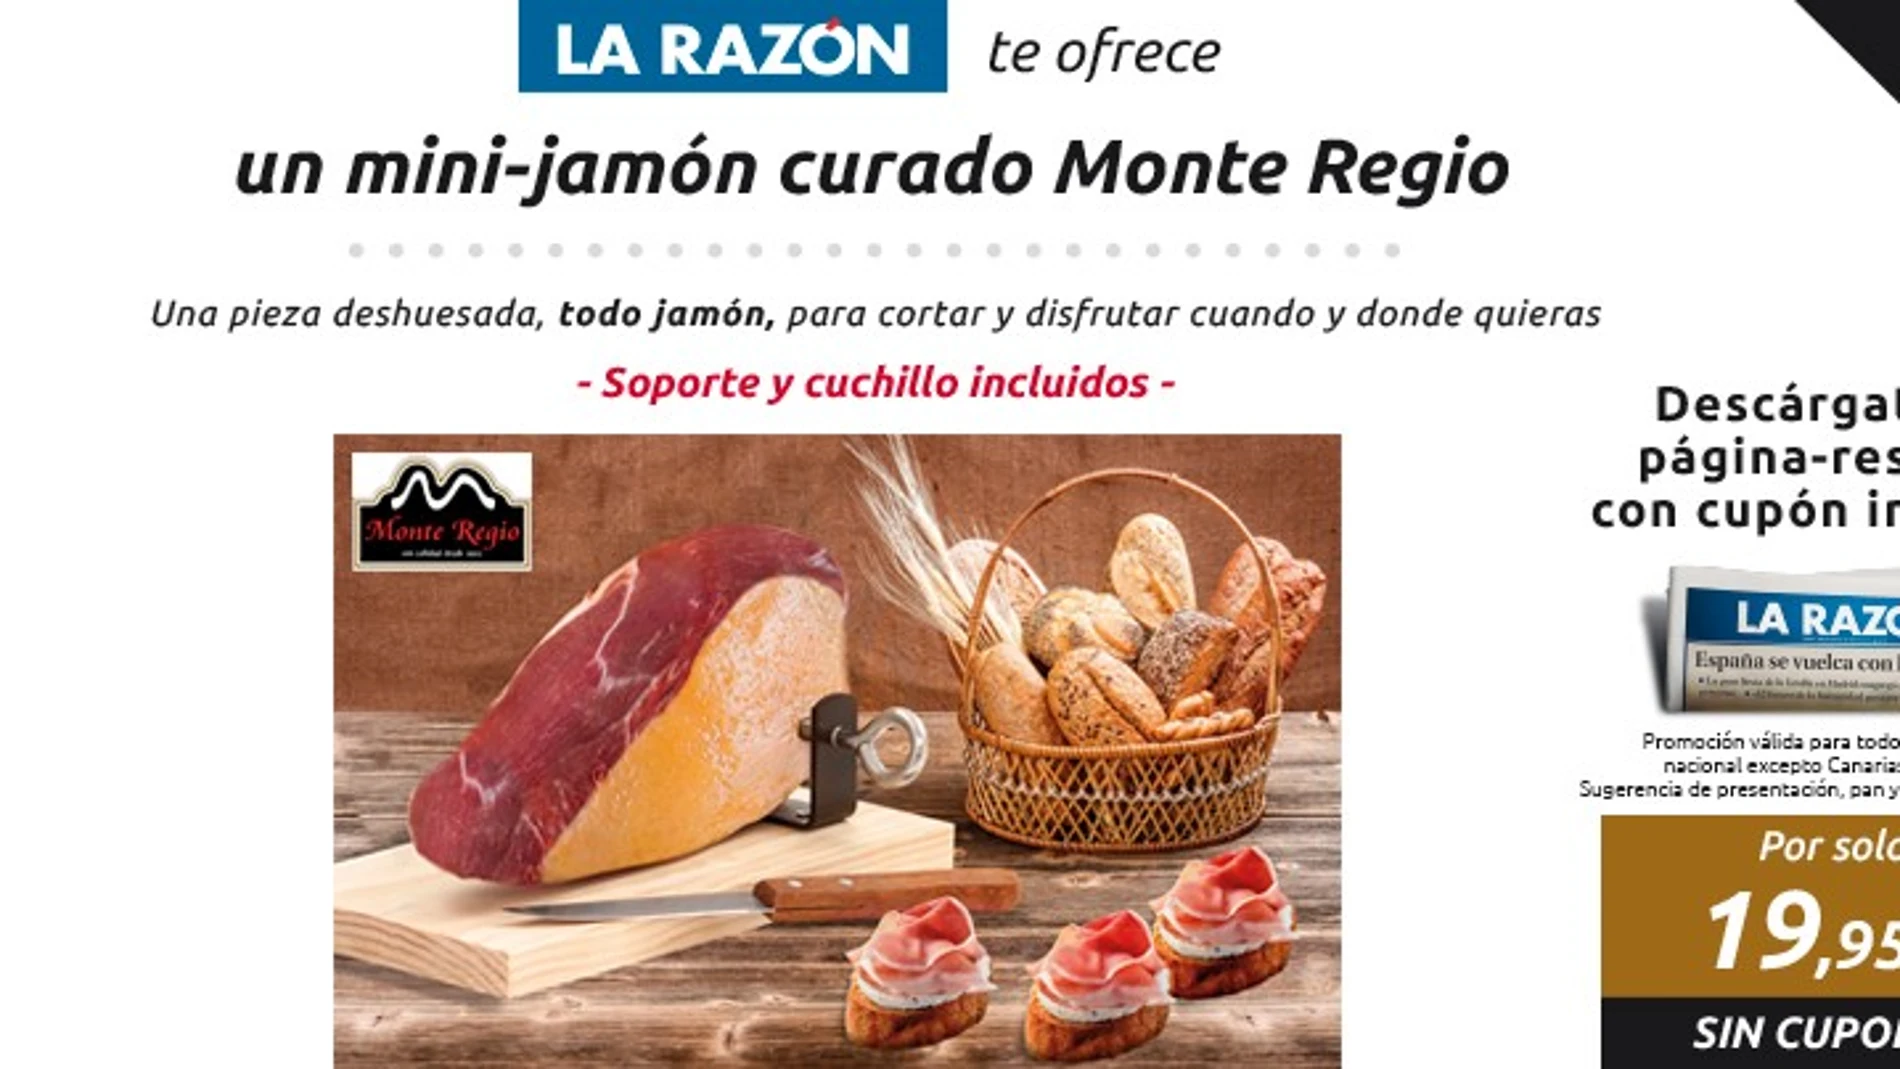 Mini-jamón curado Monte Regio